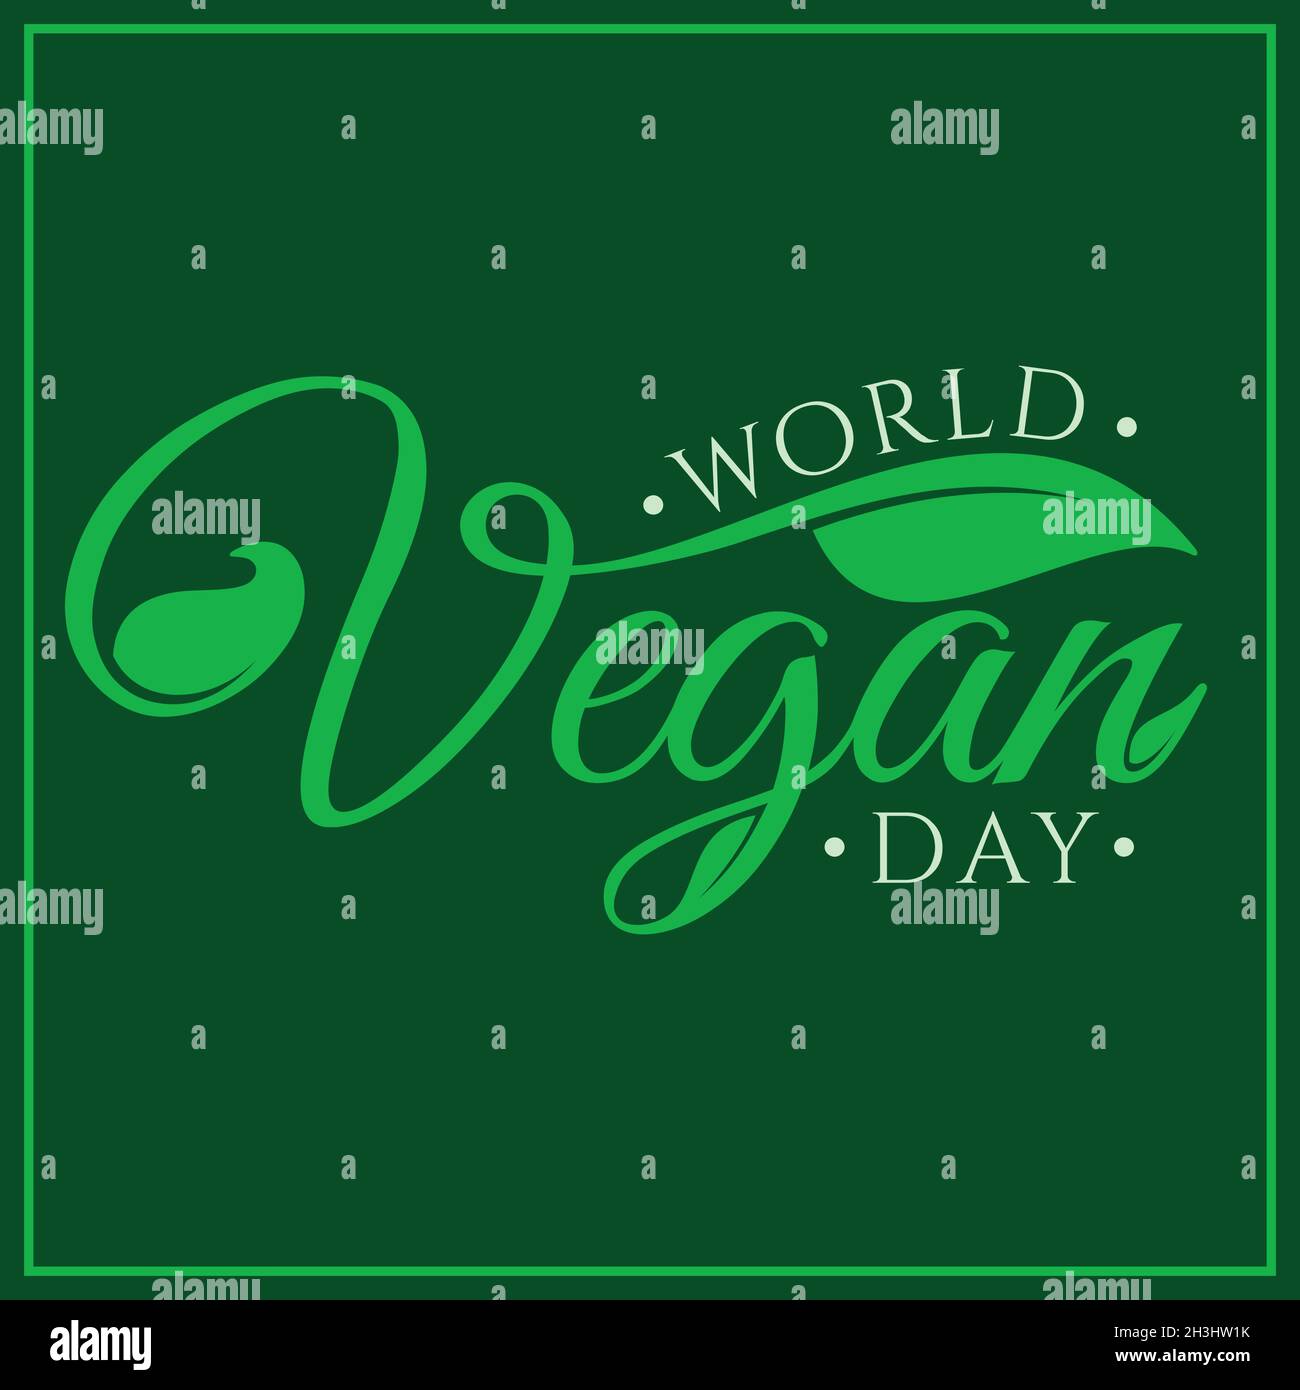 World Vegan Day sfondo vettoriale disegnato a mano. Giornata mondiale del Vegan per il modello di progettazione degli elementi. Illustrazione vettoriale EPS.8 EPS.10 Illustrazione Vettoriale